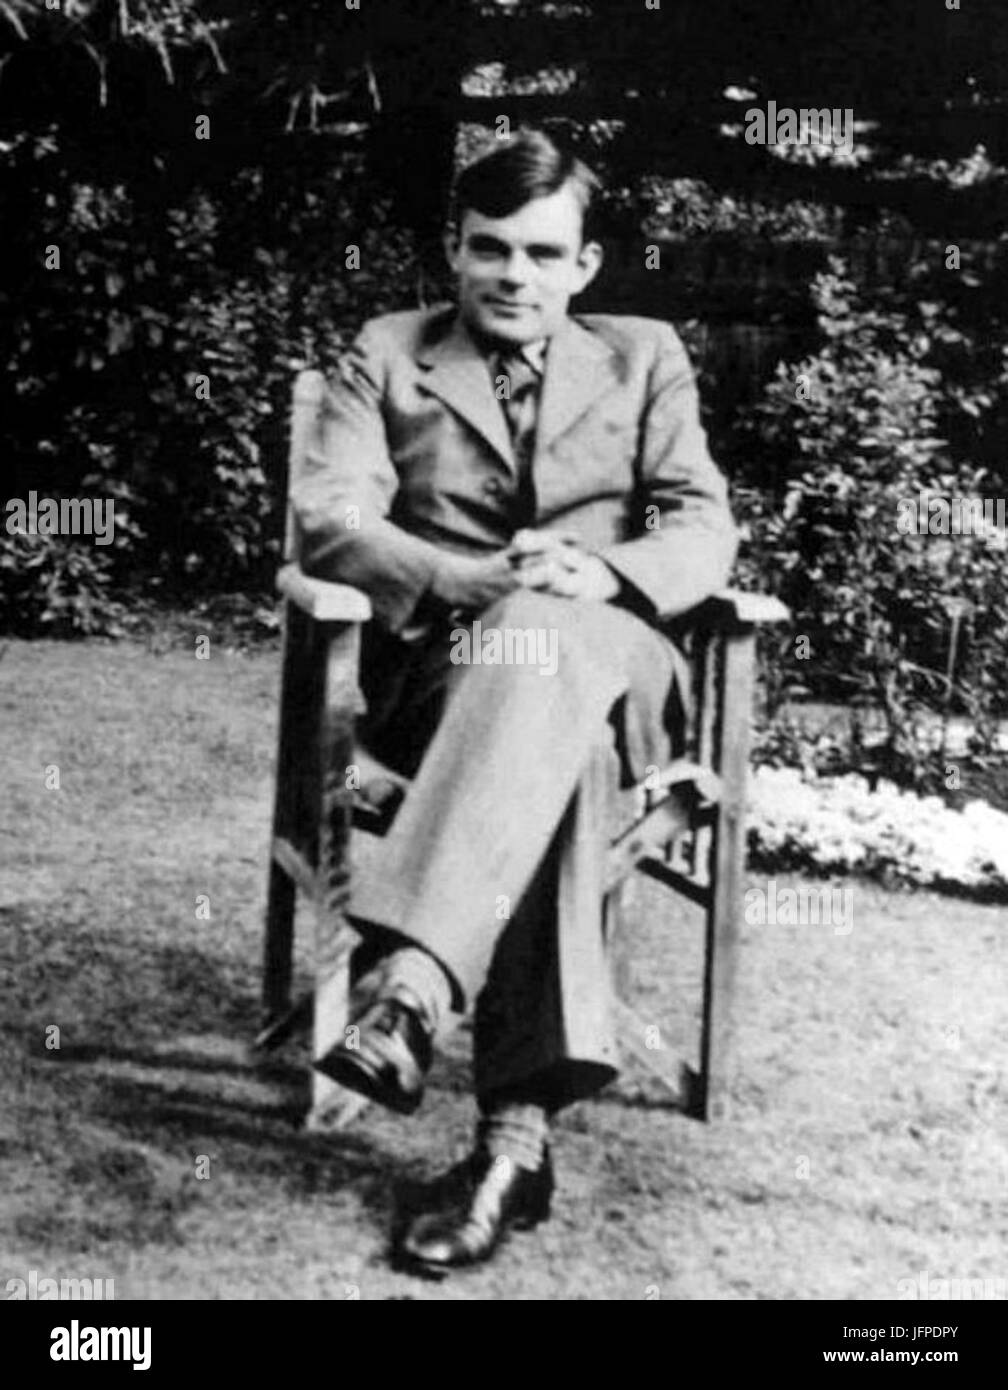 Alan Turing az 1930-as években Stock Photo